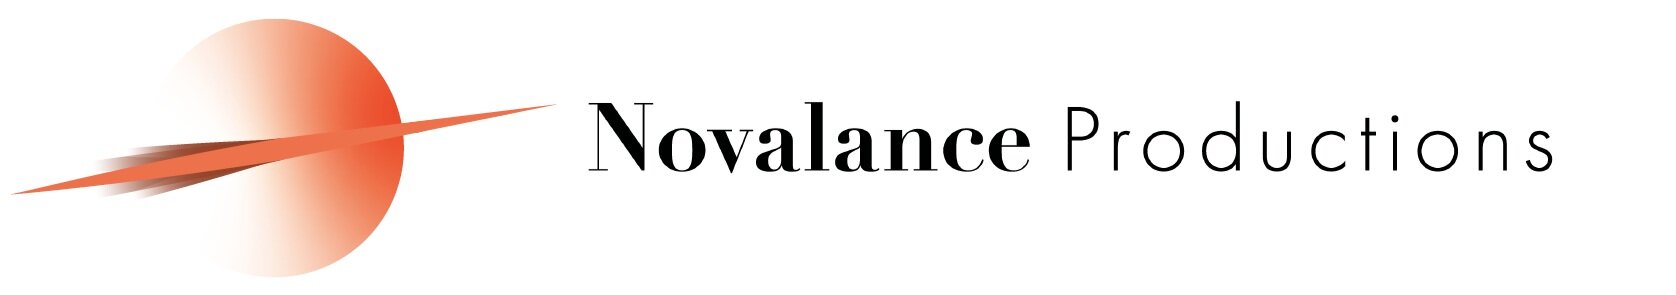 Novalance Productions